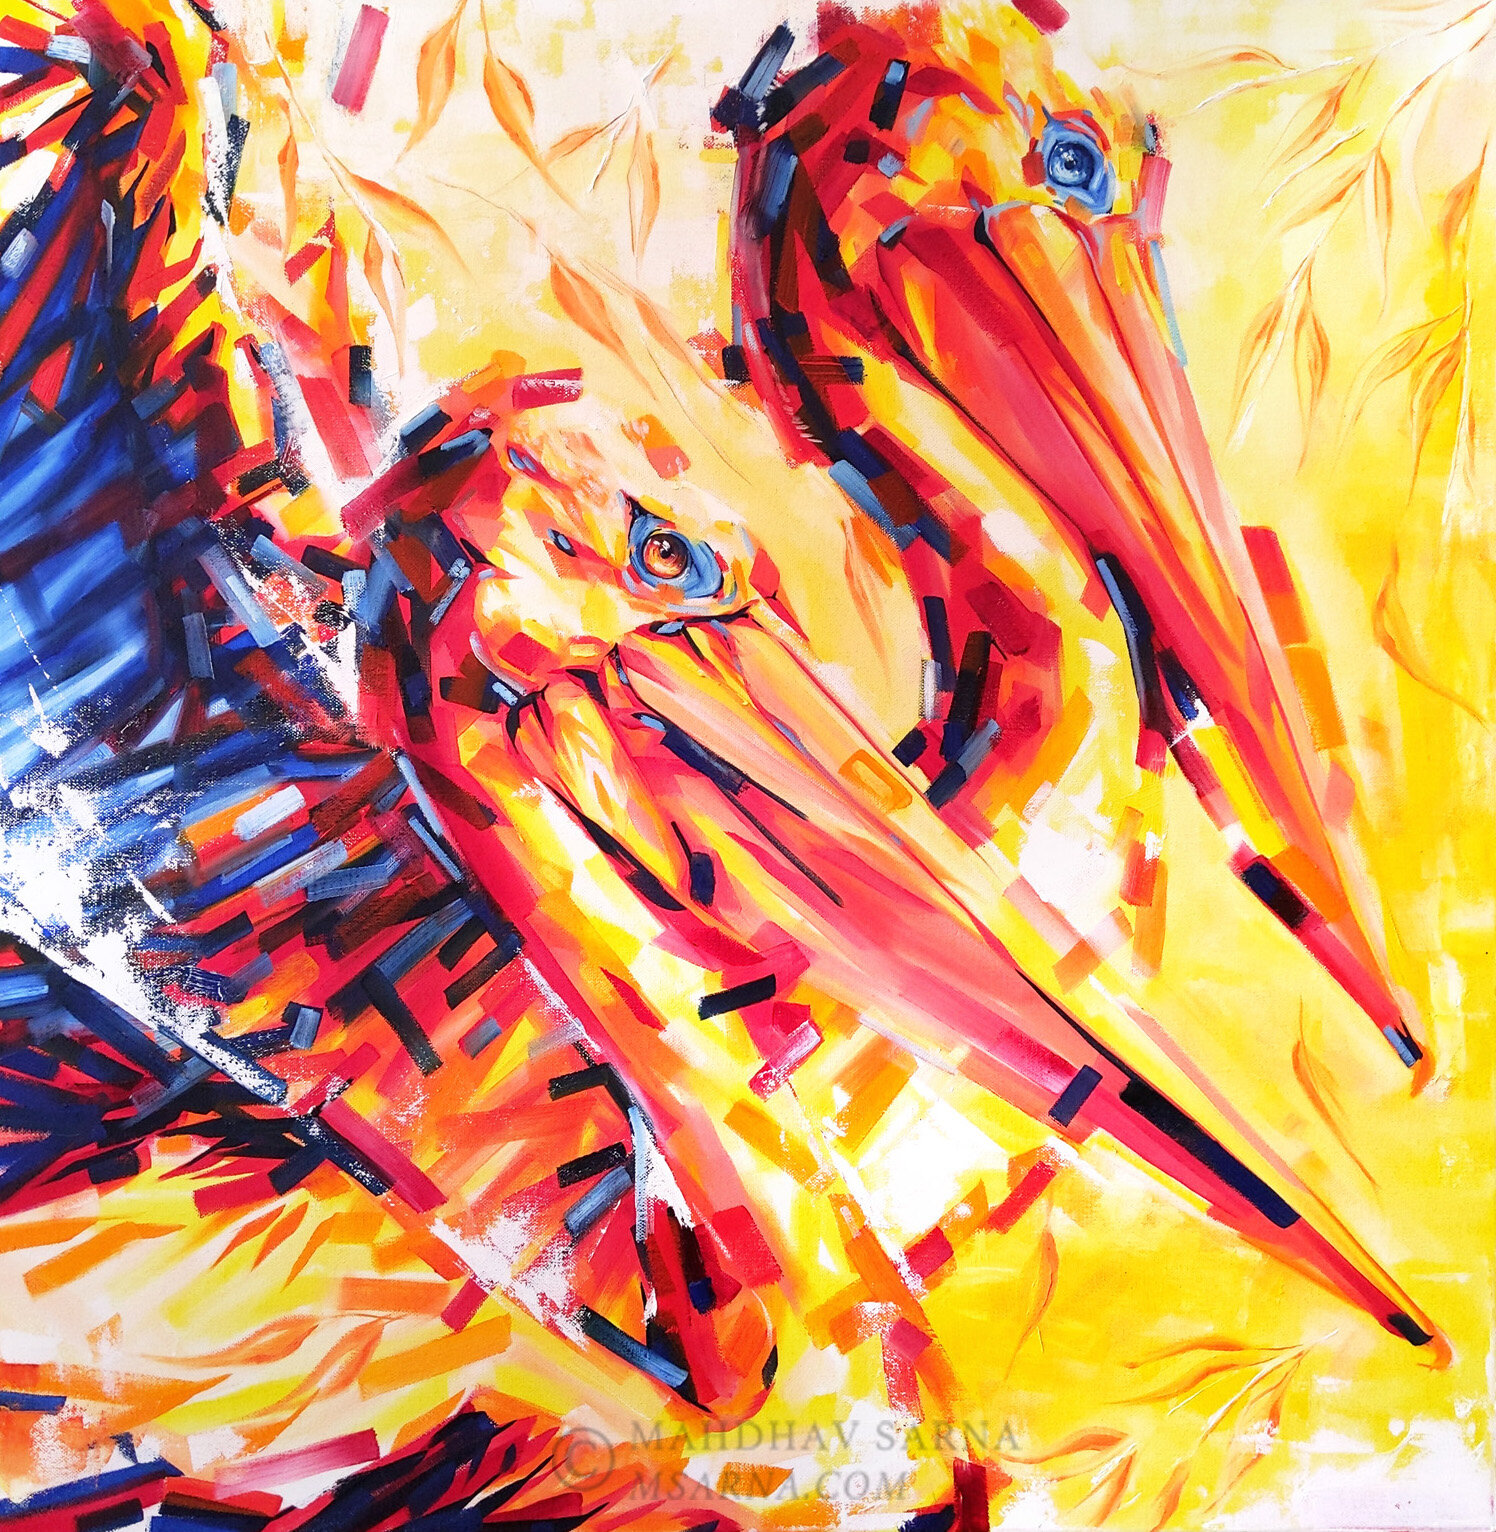 australian pelicans oil painting lsts wildlife art mahdhav sarna 01.jpg